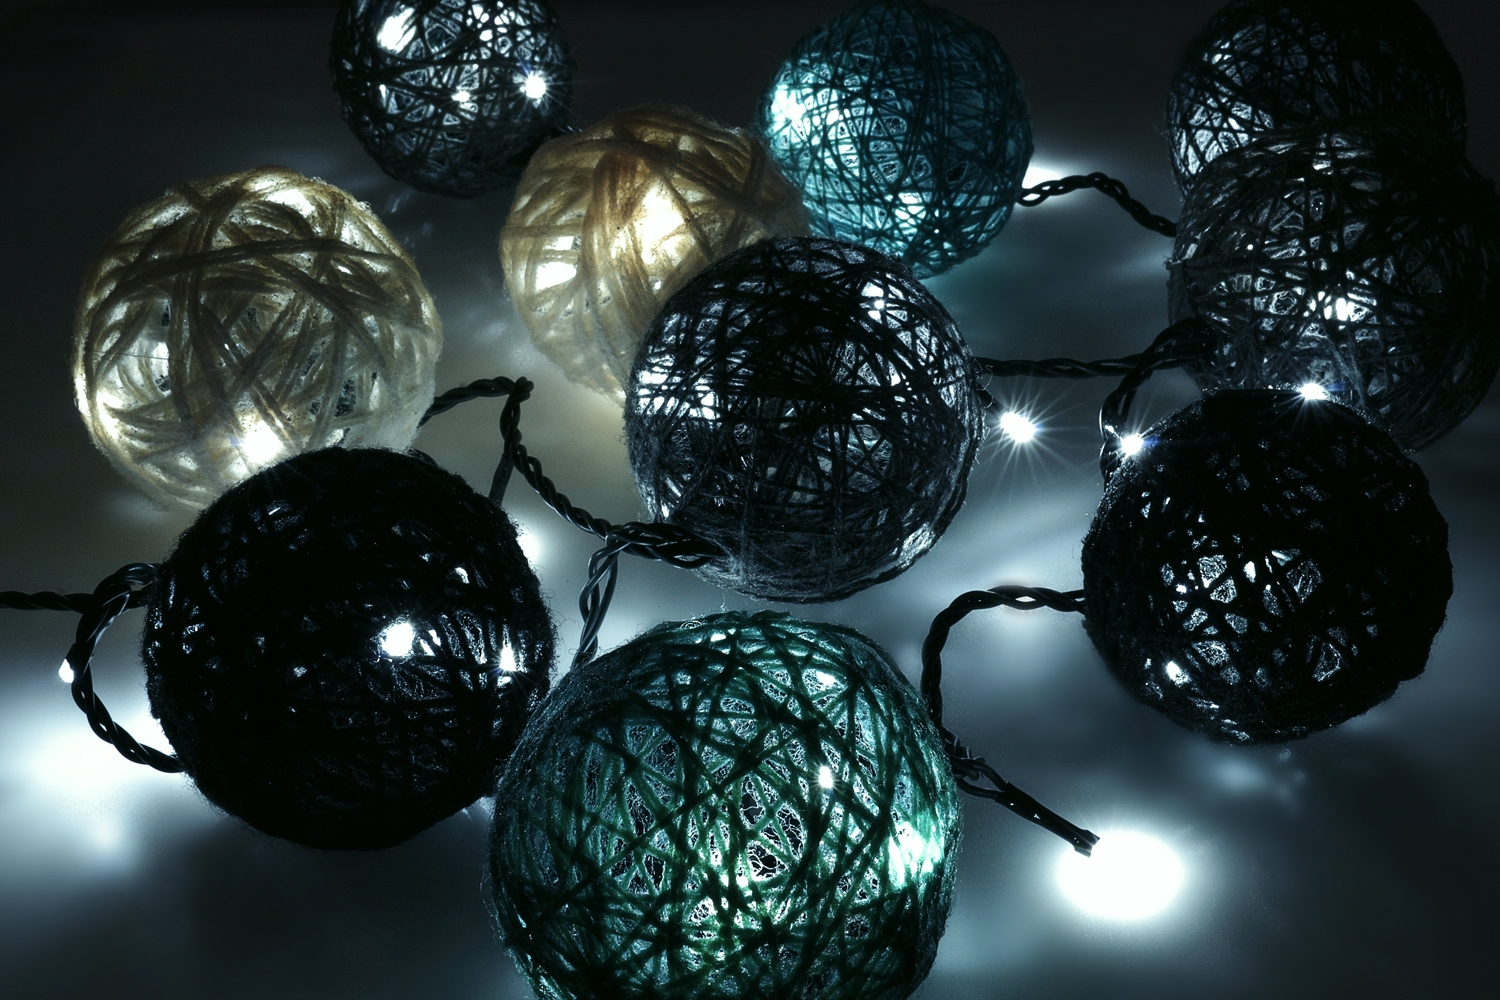 /w/e/weihnachtsbeleuchtung-lichterkette-kaltwei_-dekorationsvorschlag-02_2.jpg